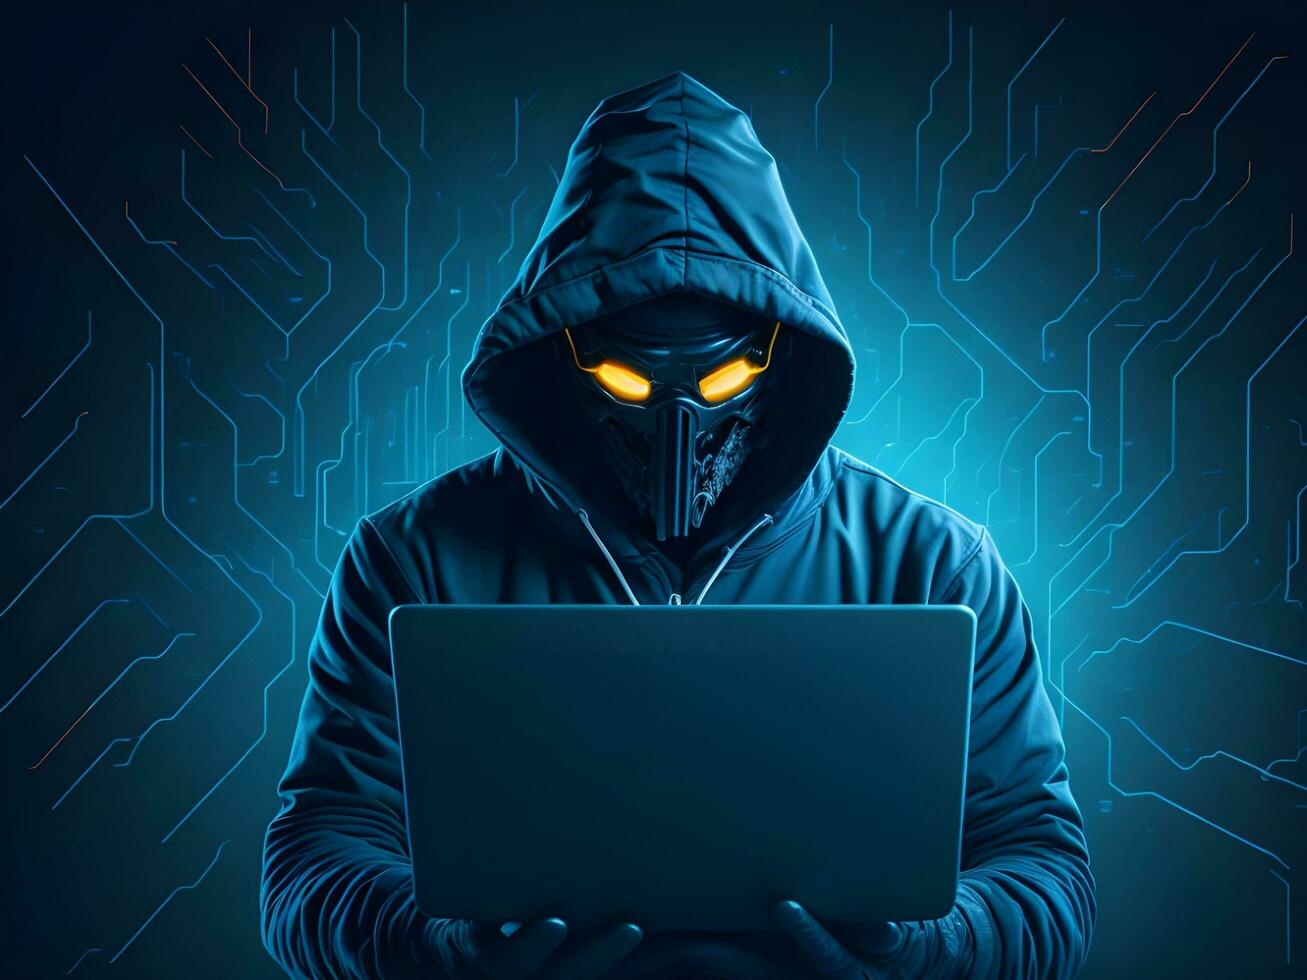 Internet seguridad proteccion desde hacker agresor ciber ataque ai generar foto